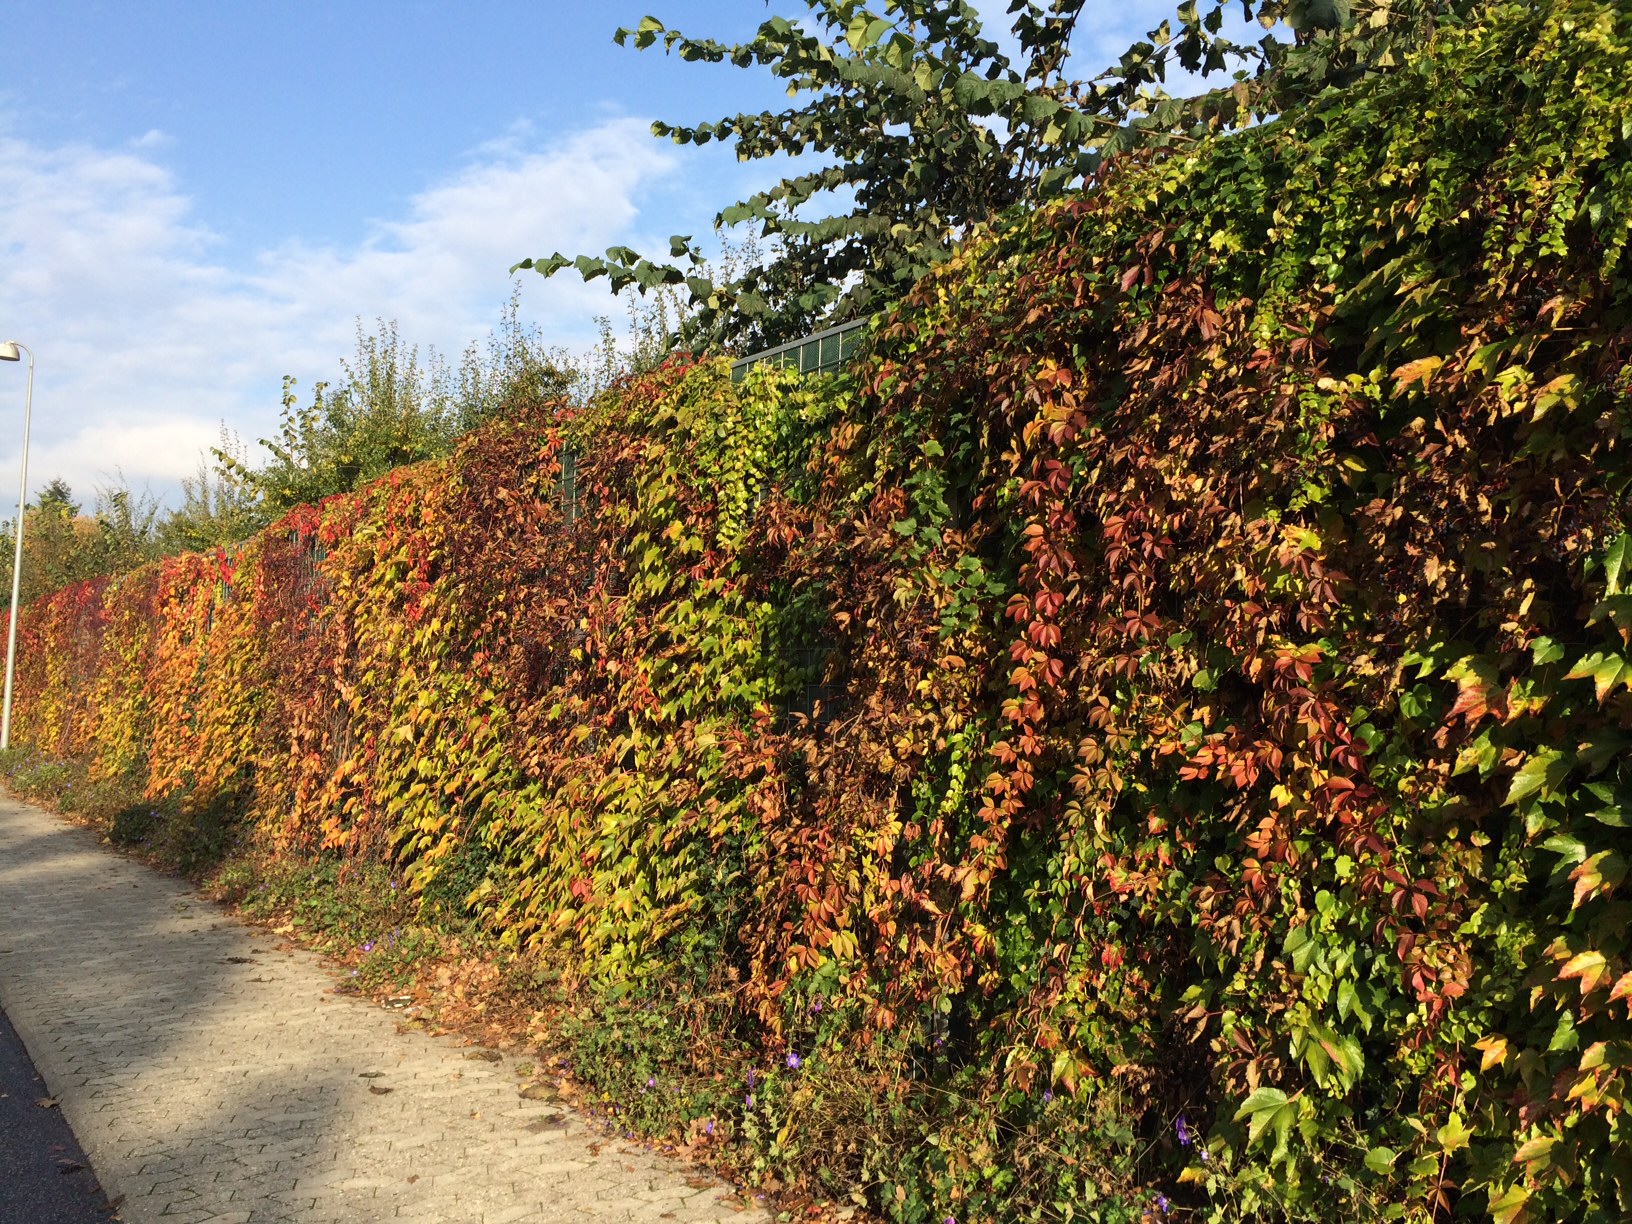 Ein Noistop® Steel-Lärmschutzzaun von Poda Zaun neben einer öffentlichen Straße, bedeckt mit dichter Vegetation in Herbstfarben